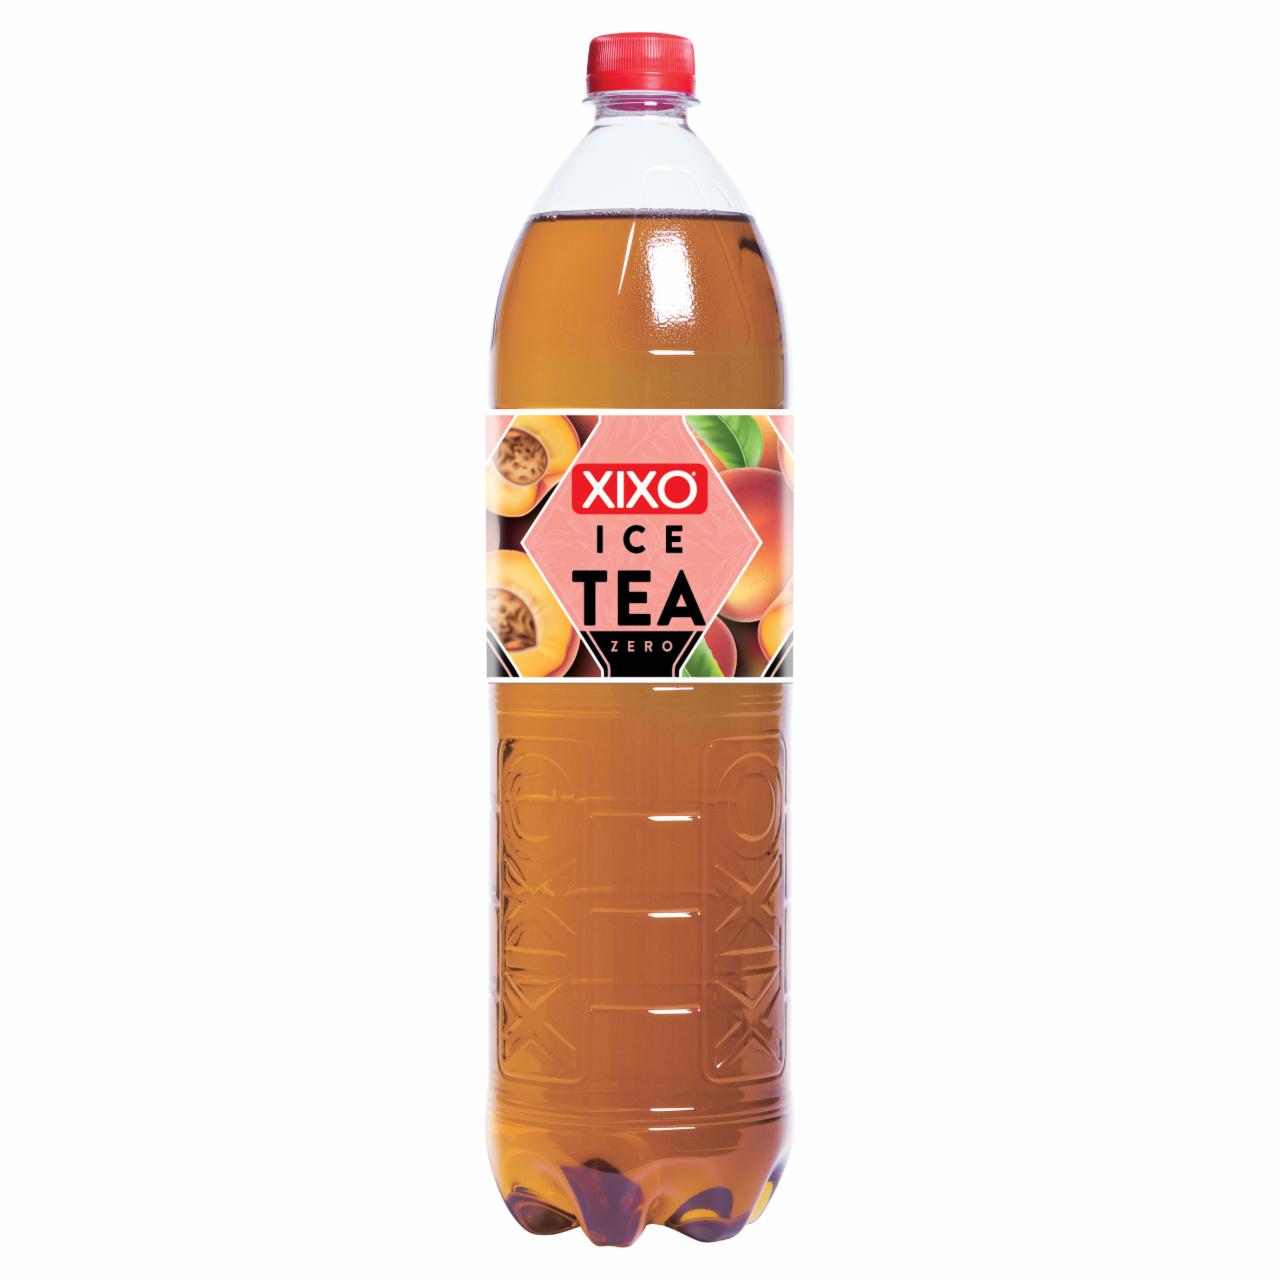 Képek - XIXO Ice Tea Zero őszibarackos fekete tea 1,5 l